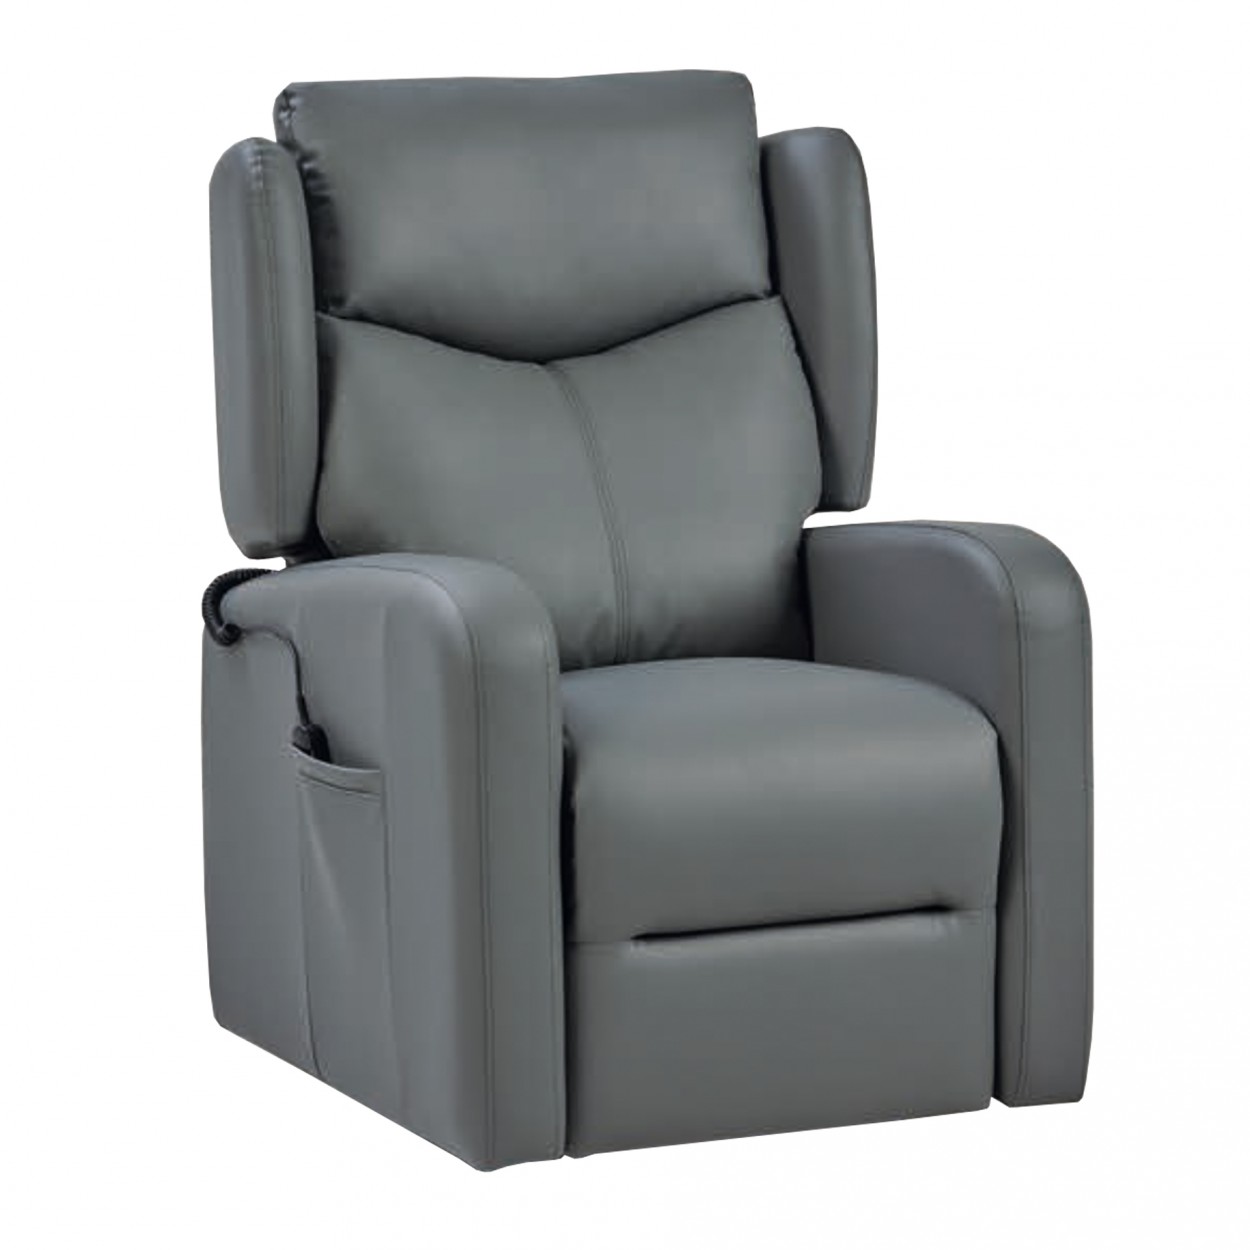 Comprar sofá chaise longue relax motorizado online - SofaNatur